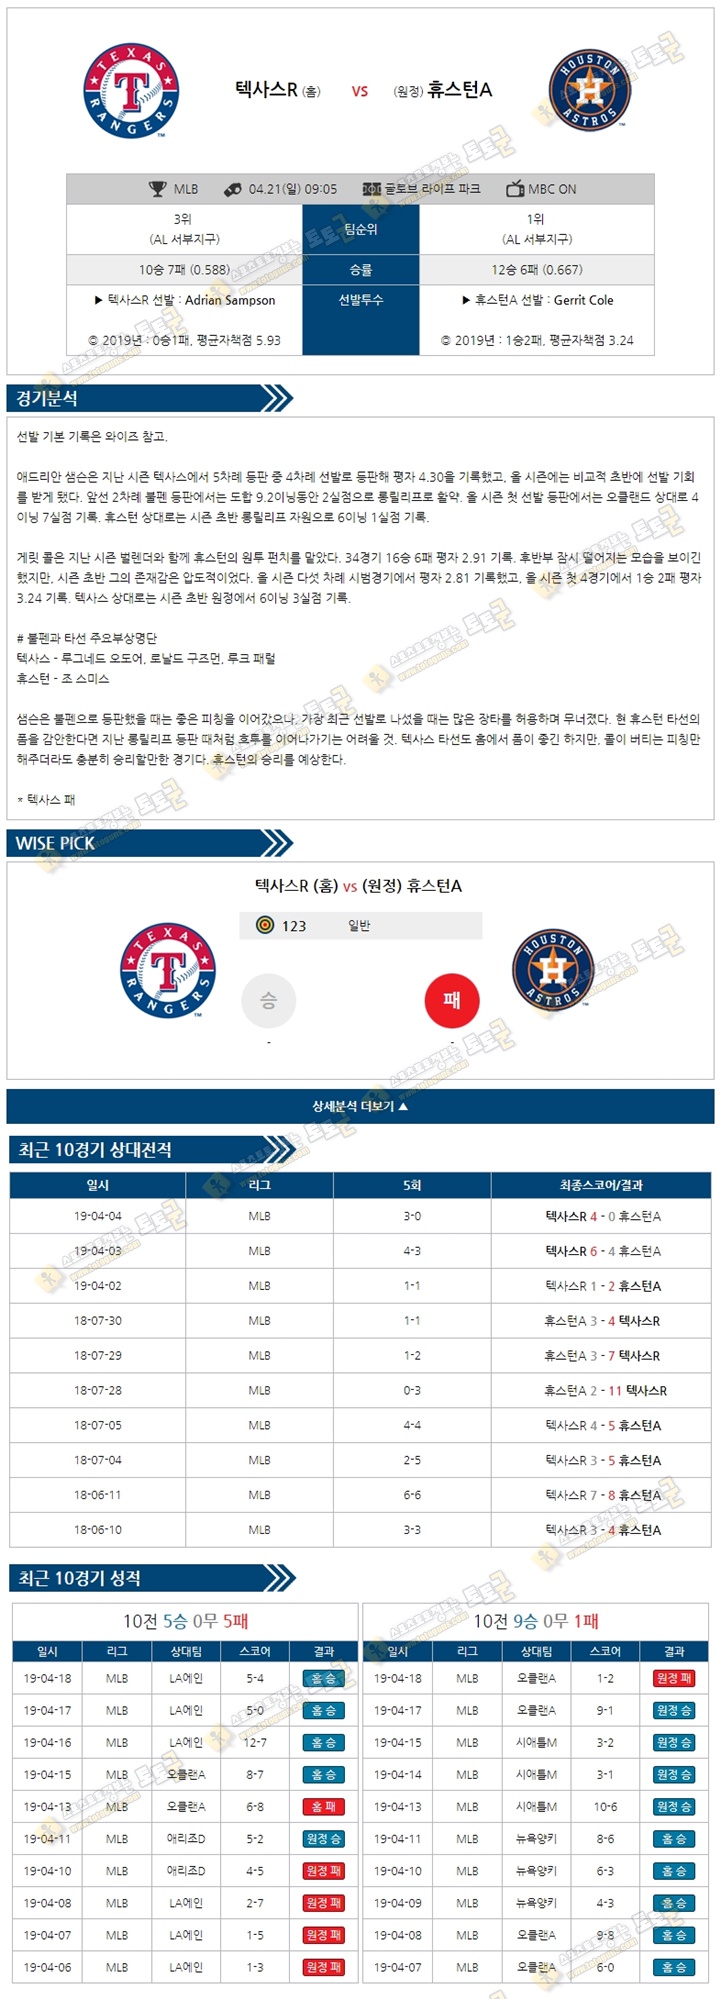 믈브분석 MLB 4월21일 텍사스 vs 휴스턴 토토군 분석